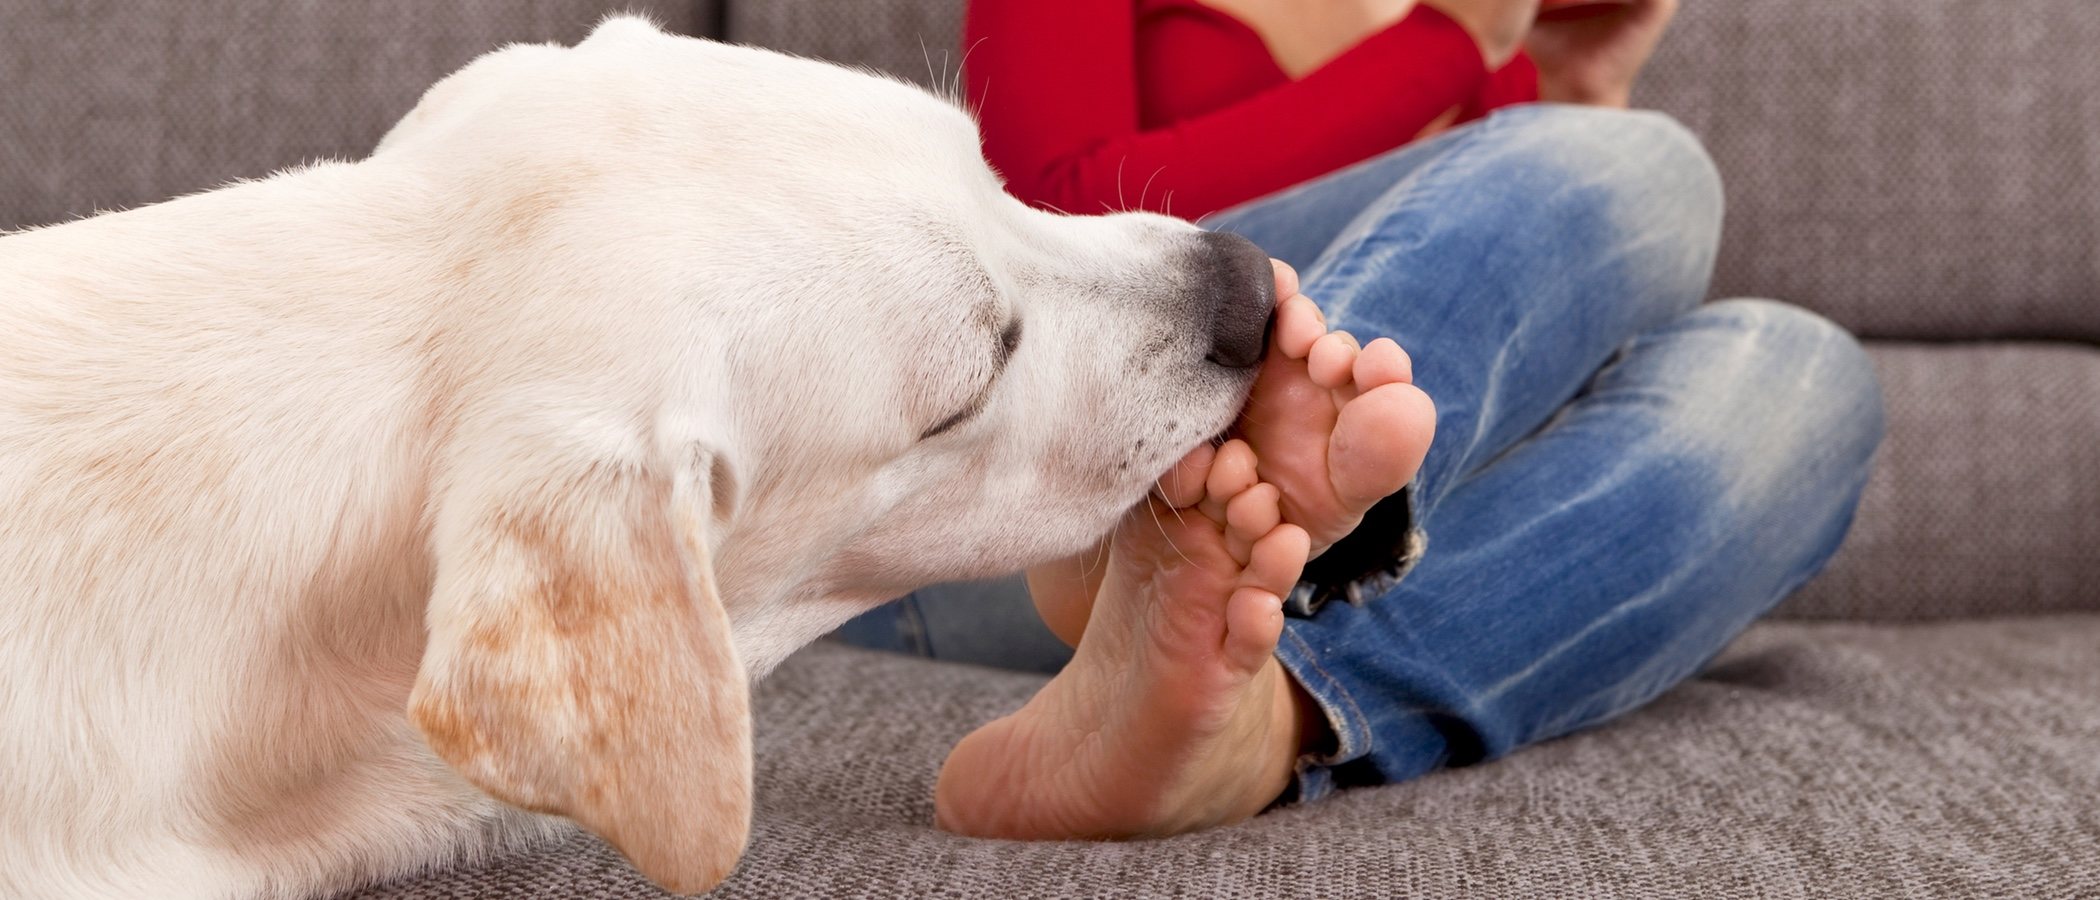 Ciencias Sociales Etapa un acreedor Por qué mi perro me lame los pies? - Bekia Mascotas